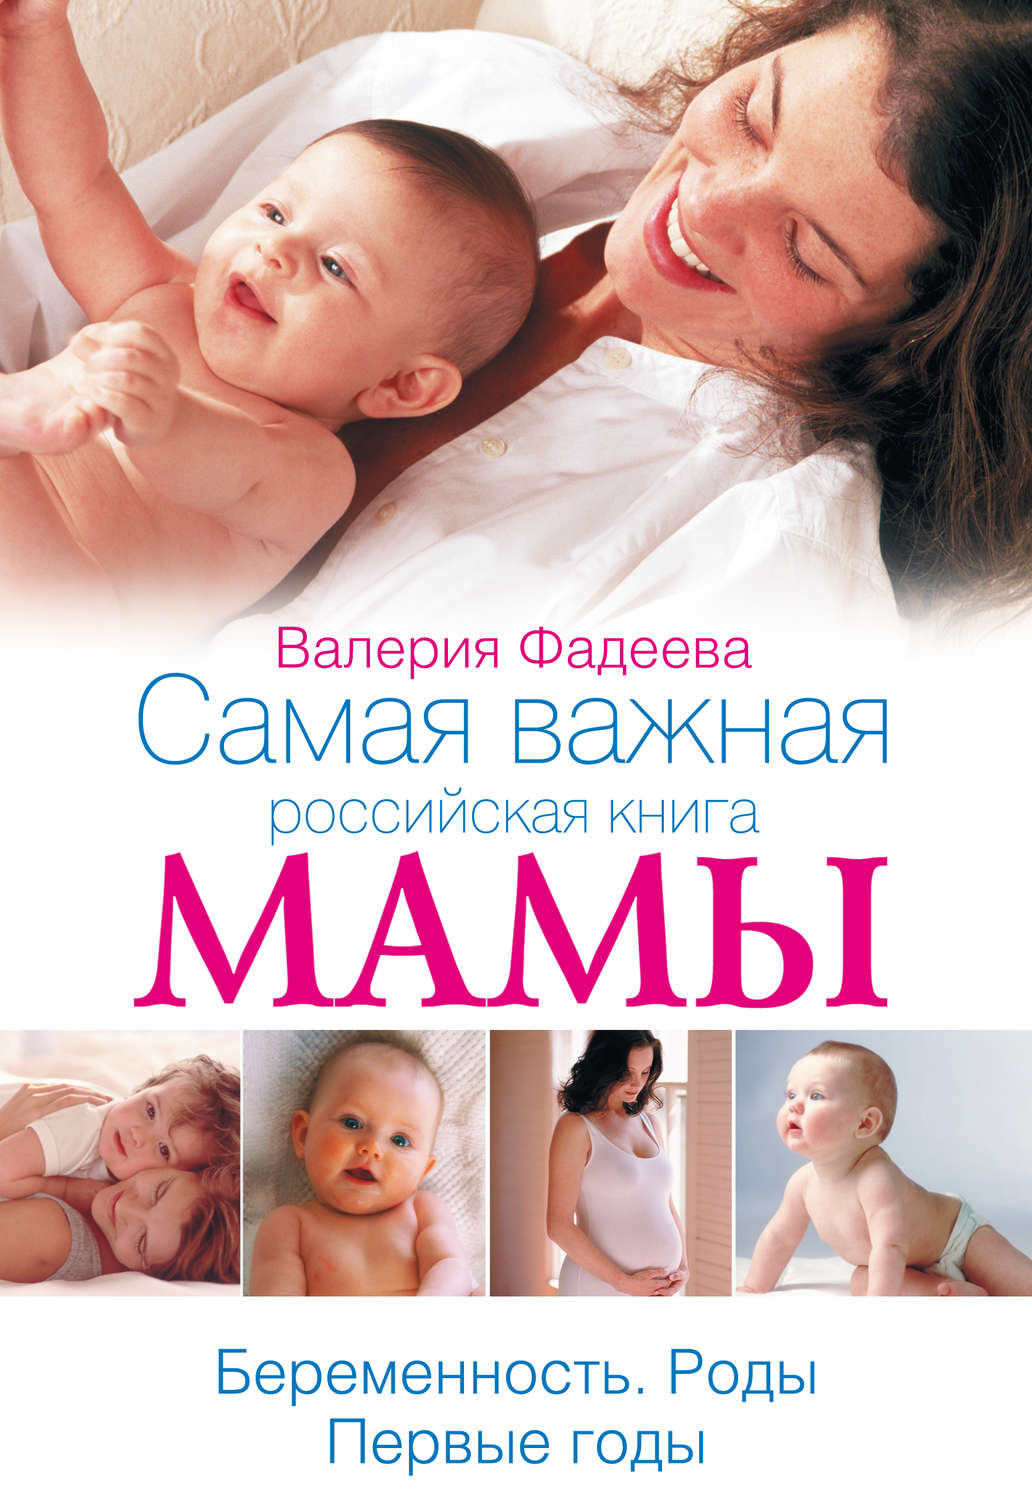 Скачать бесплатно книги о беременности и родах